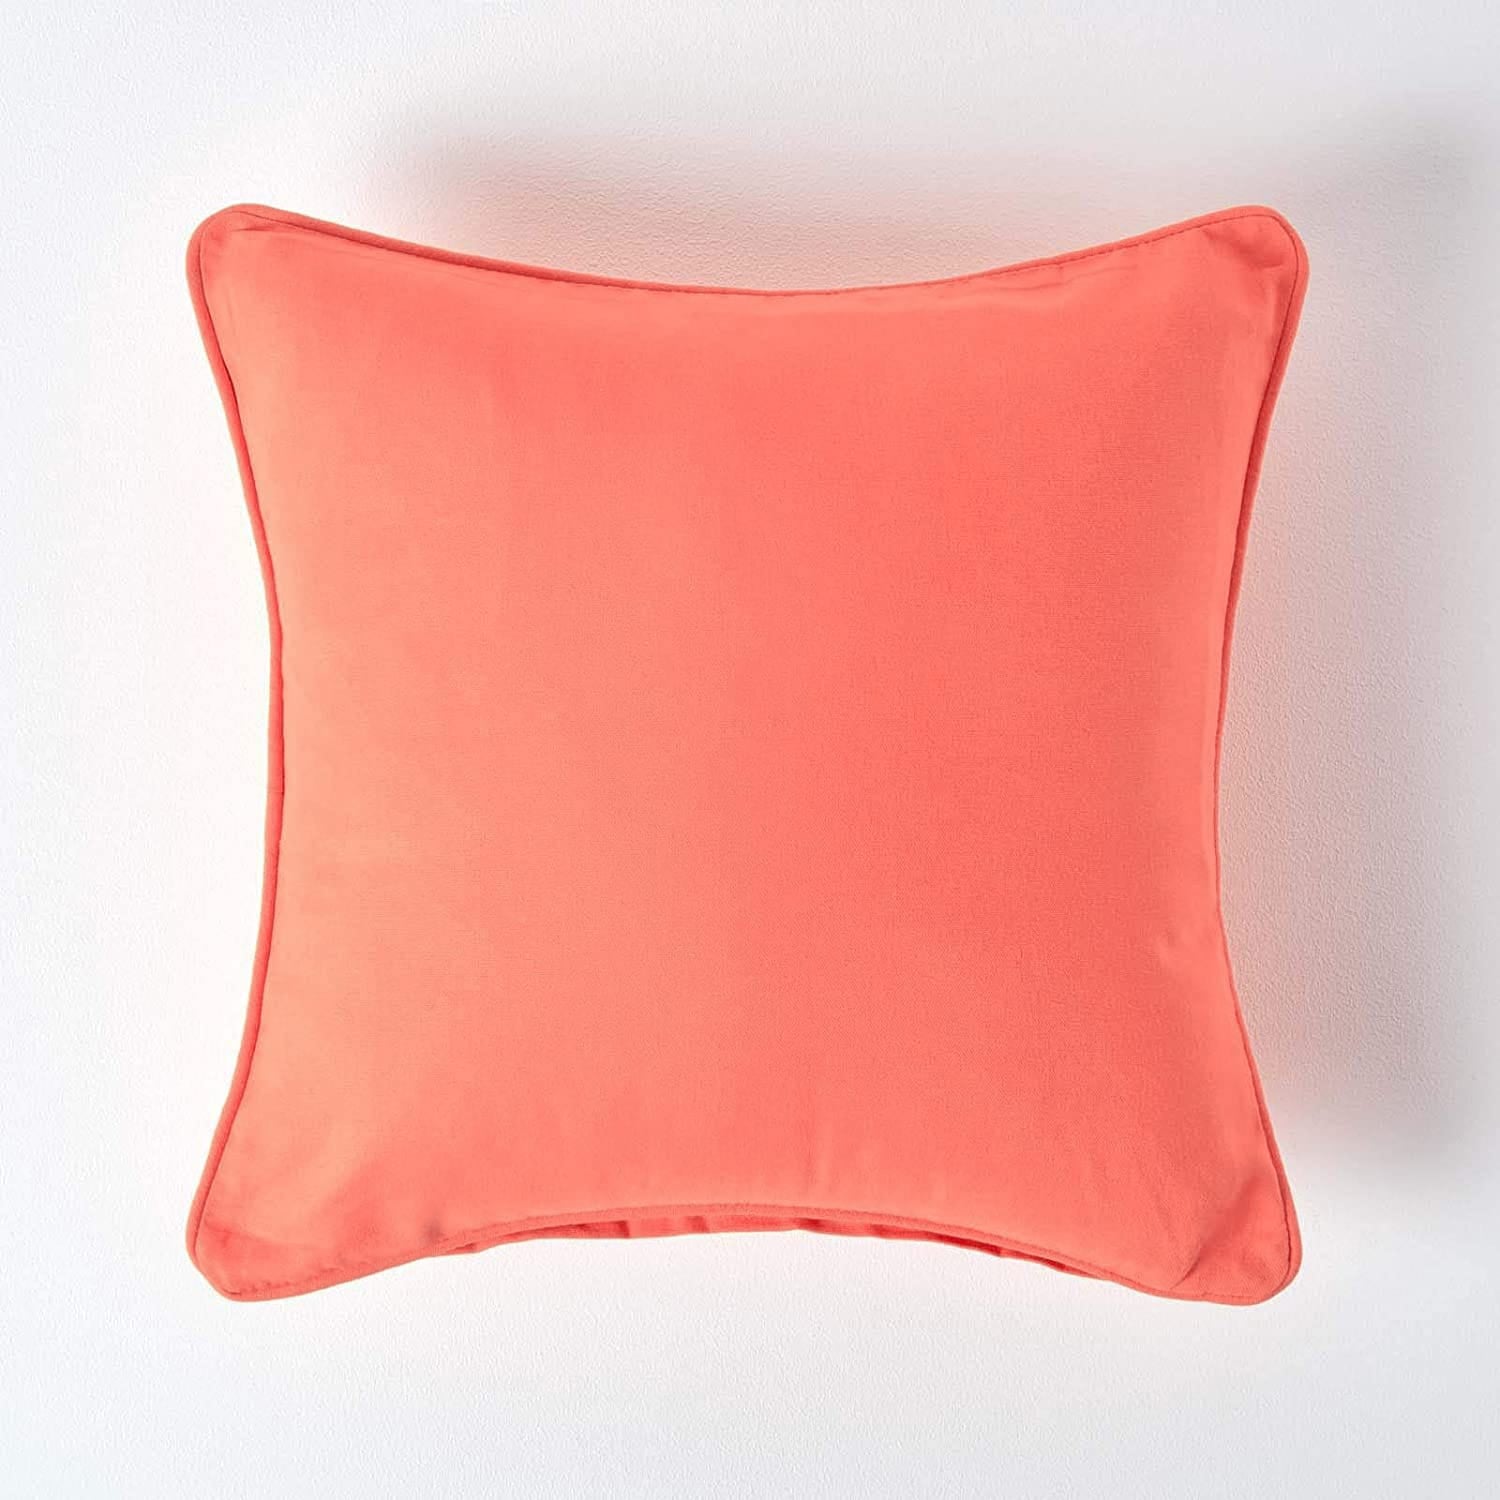 Plain Cotton 1 Pc Decorative Cushion Cover - Peach